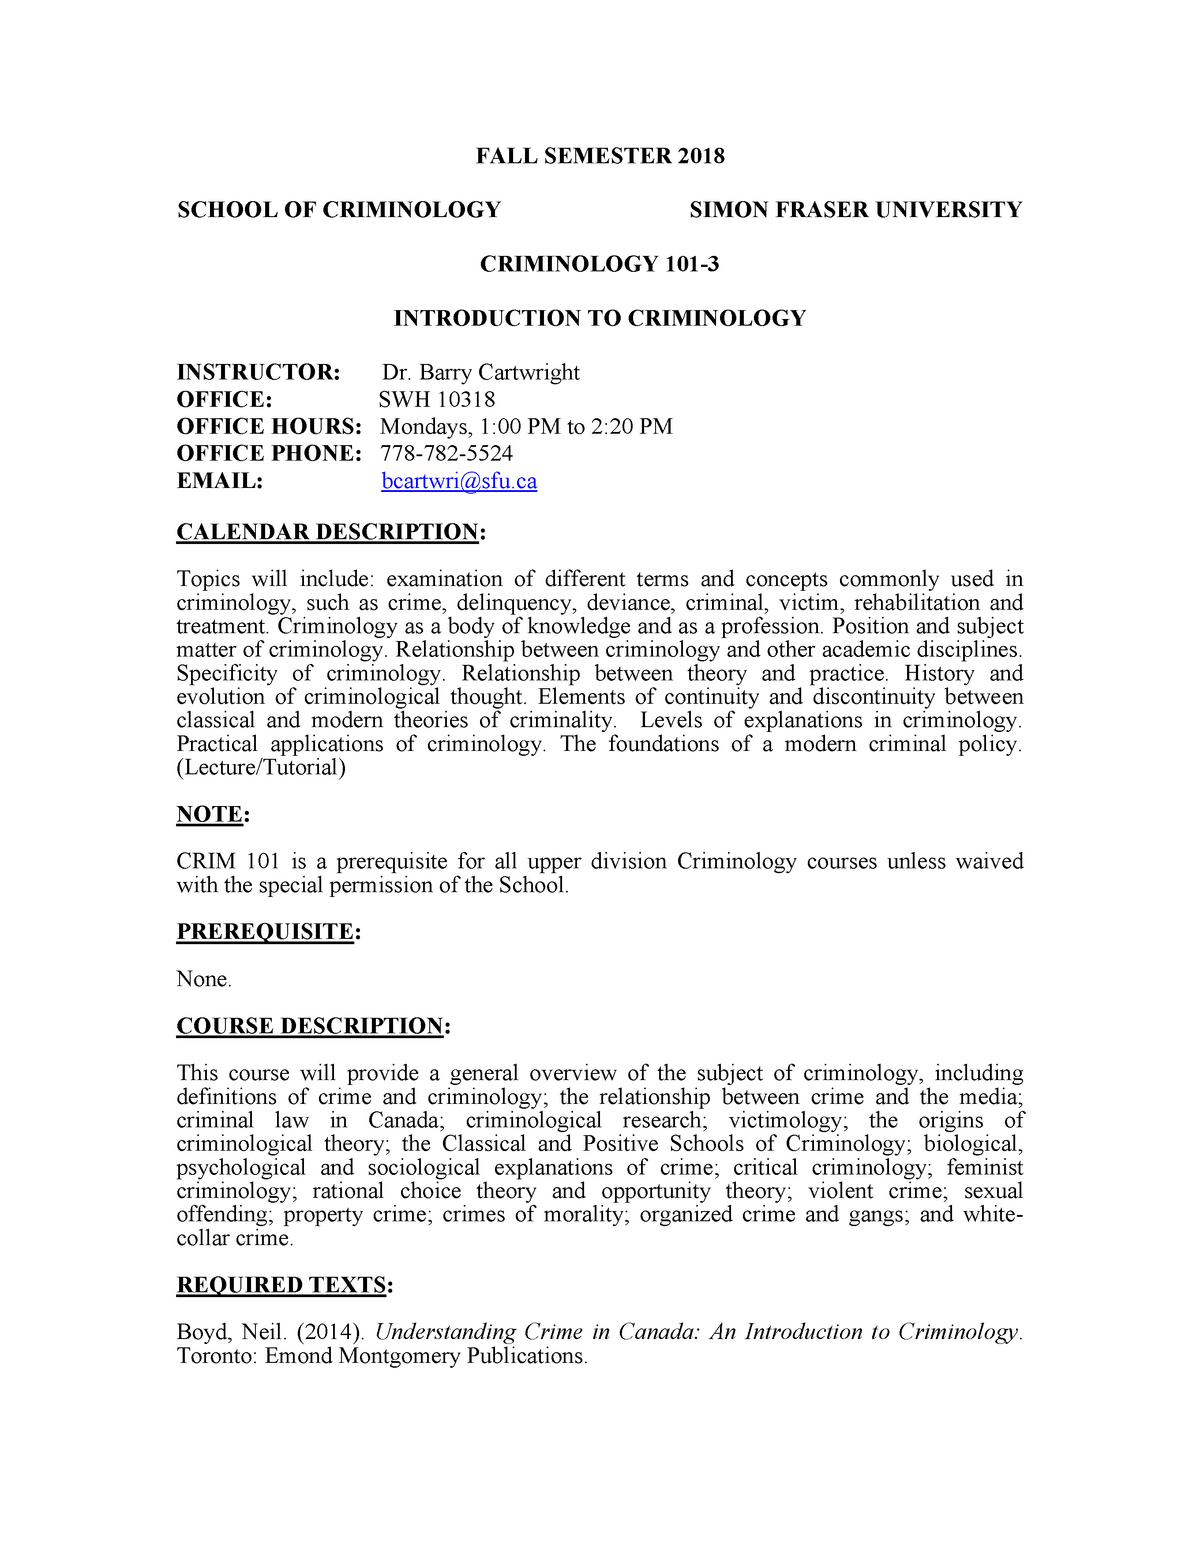 college application letter for criminology